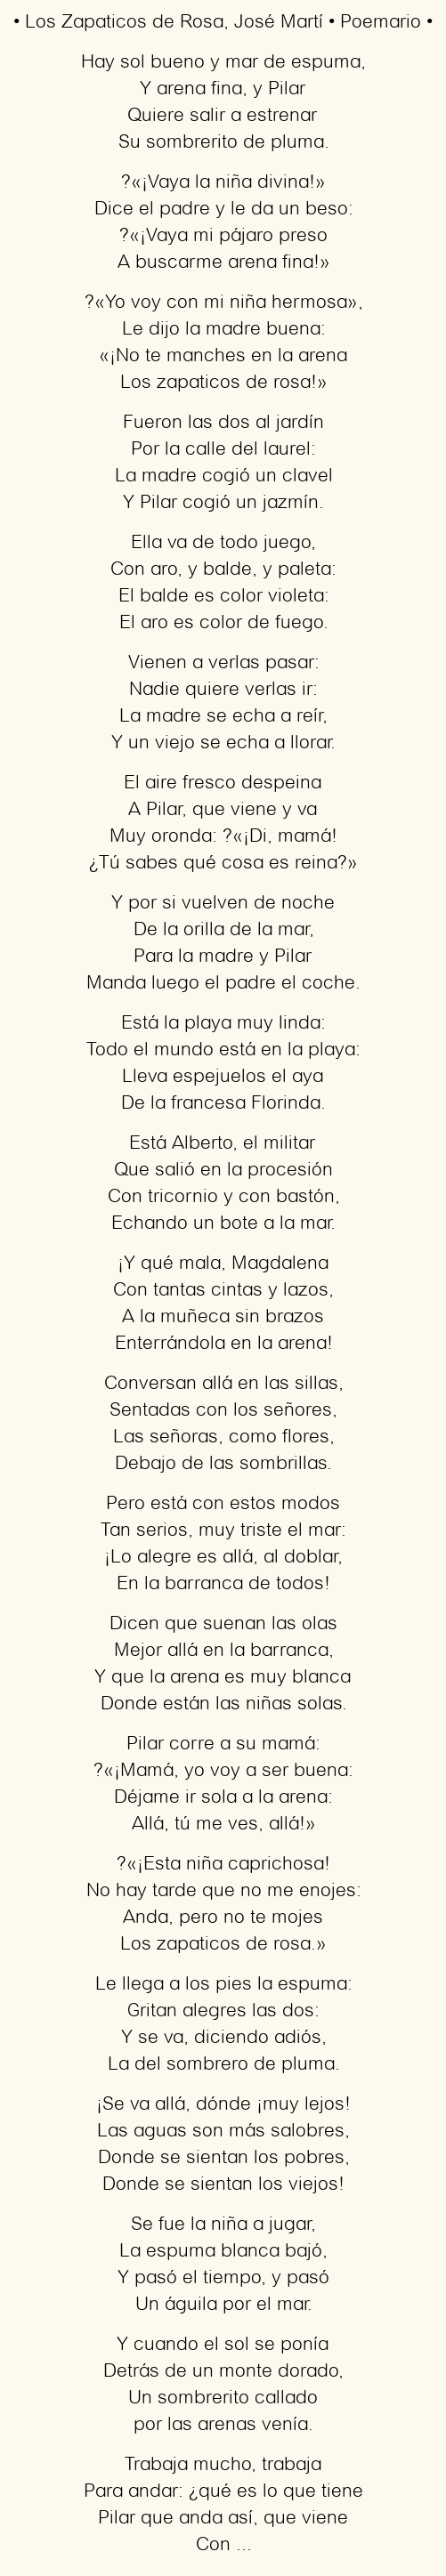 Imagen con el poema Los zapaticos de rosa, por José Martí